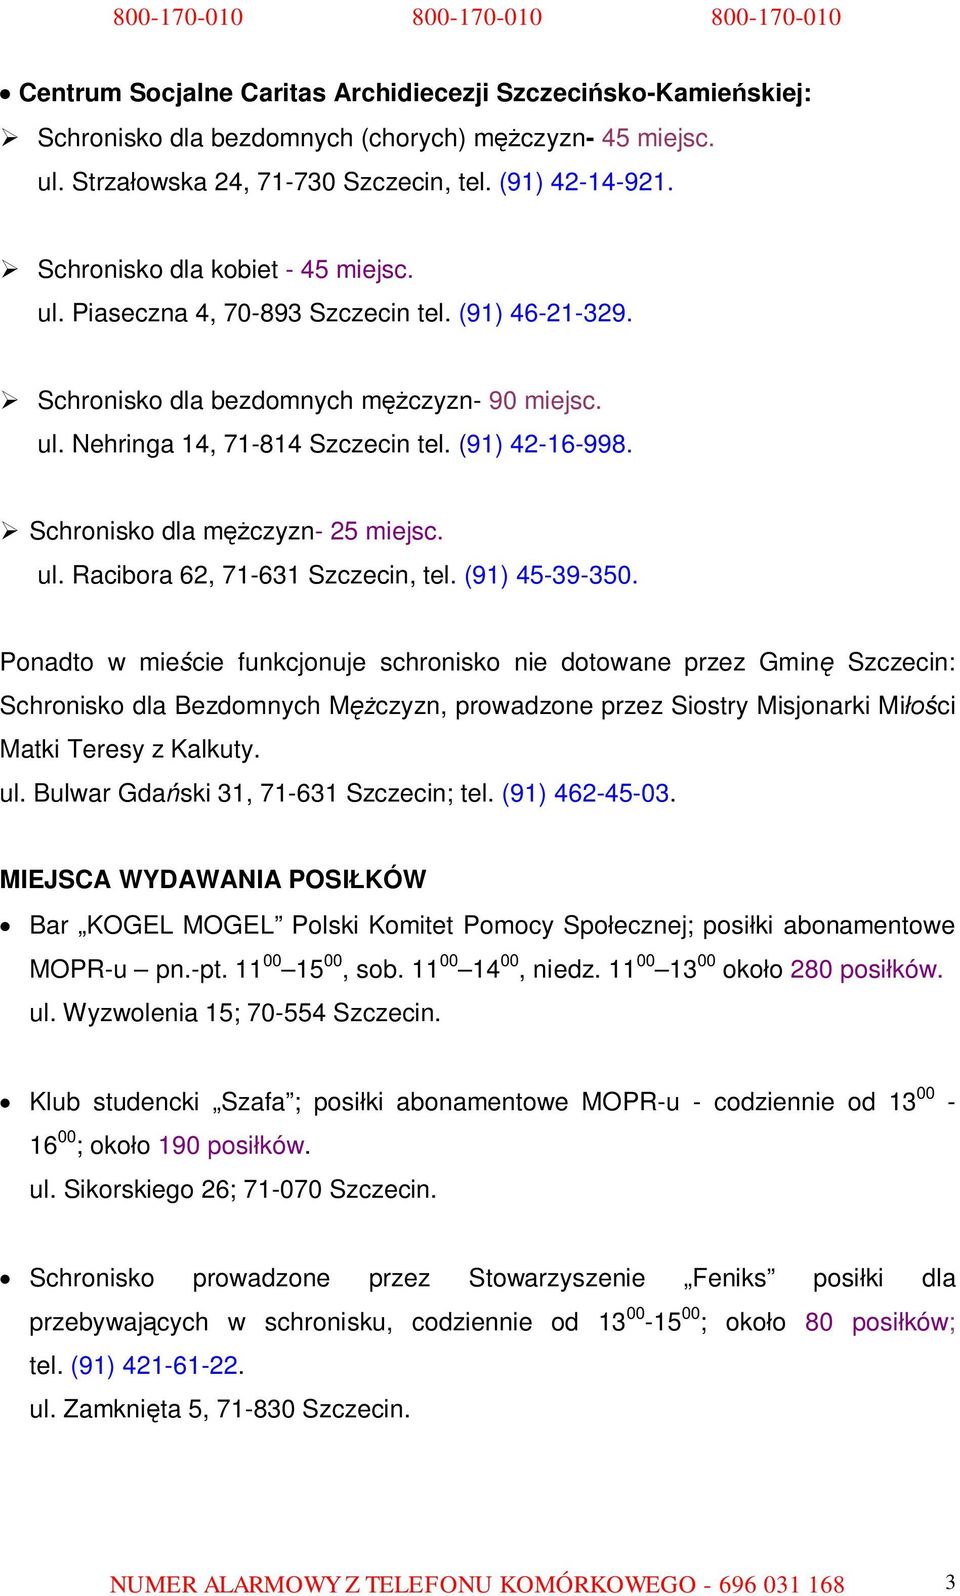 Schronisko dla mężczyzn- 25 miejsc. ul. Racibora 62, 71-631 Szczecin, tel. (91) 45-39-350.